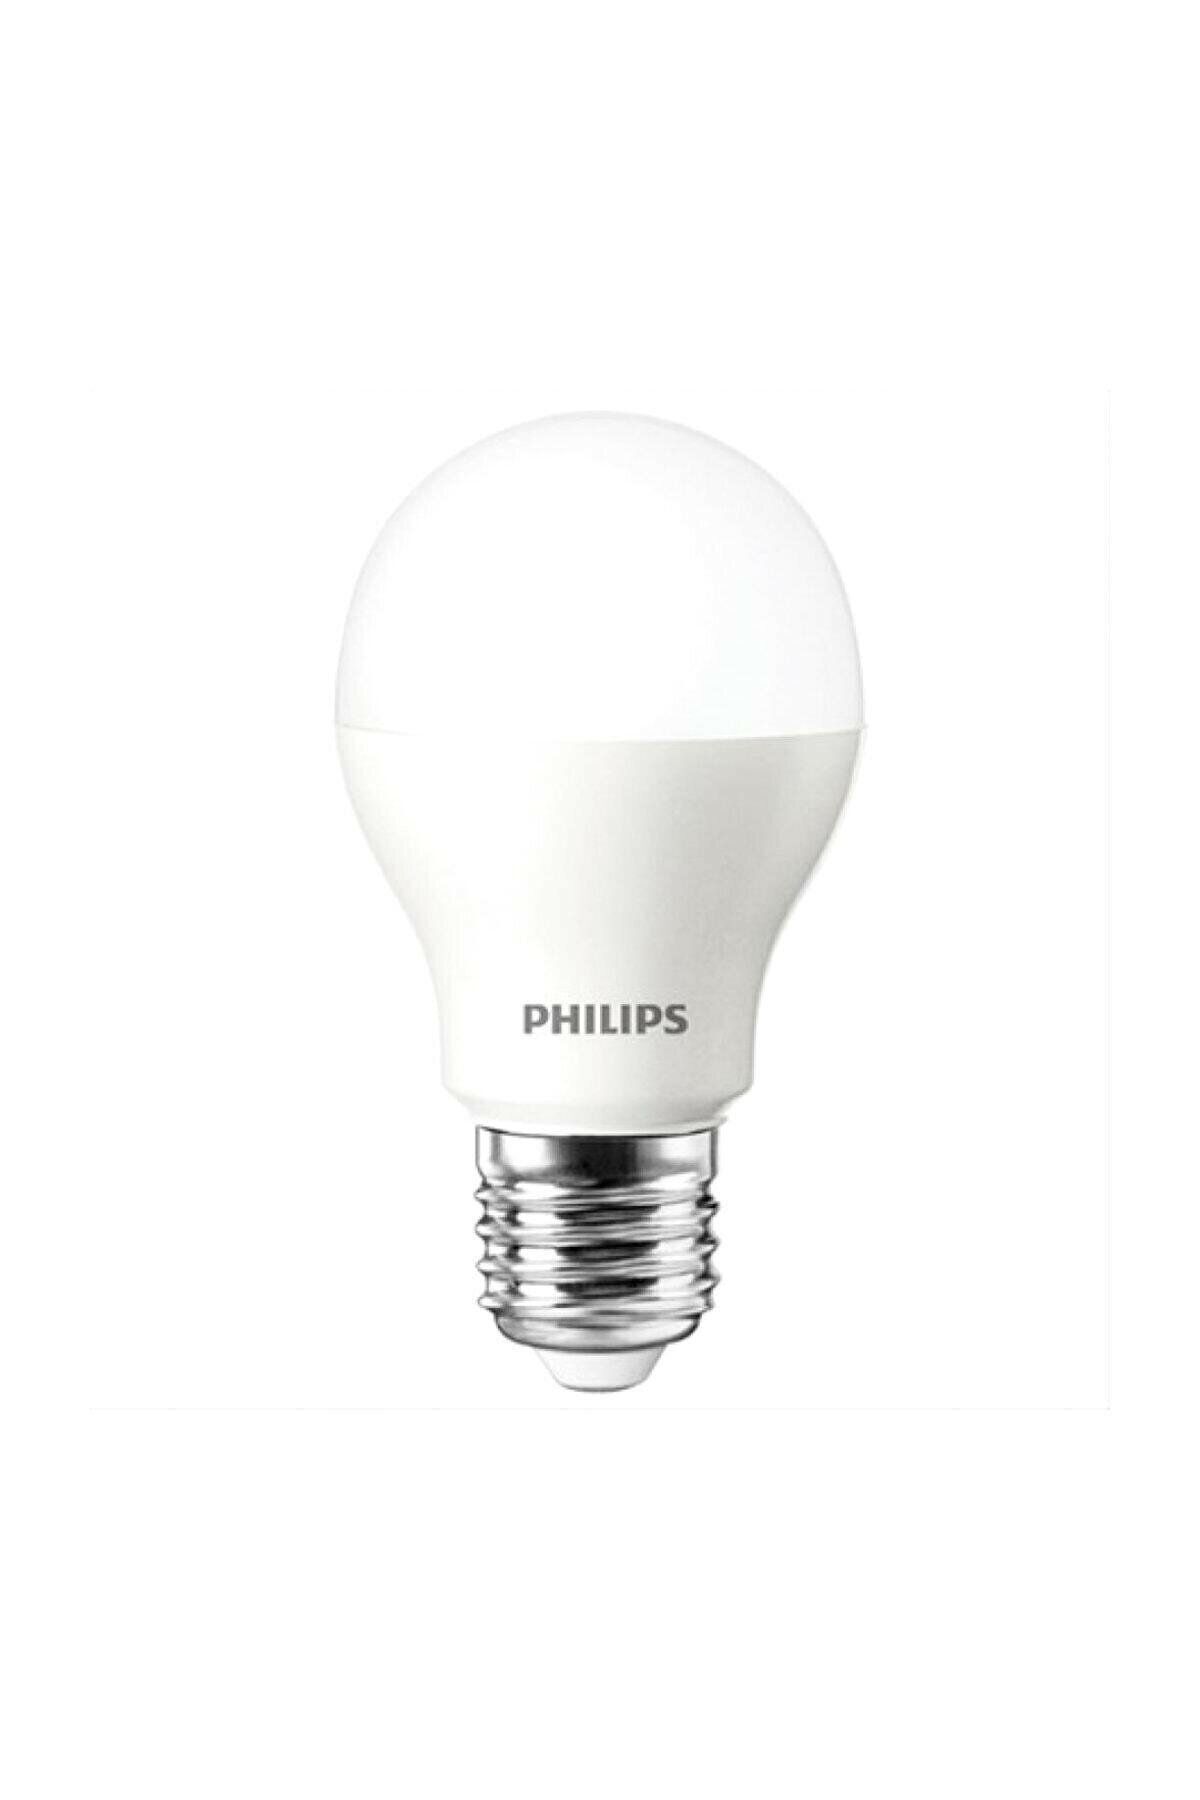 Philips Beyaz Işık Led Ampul 13w